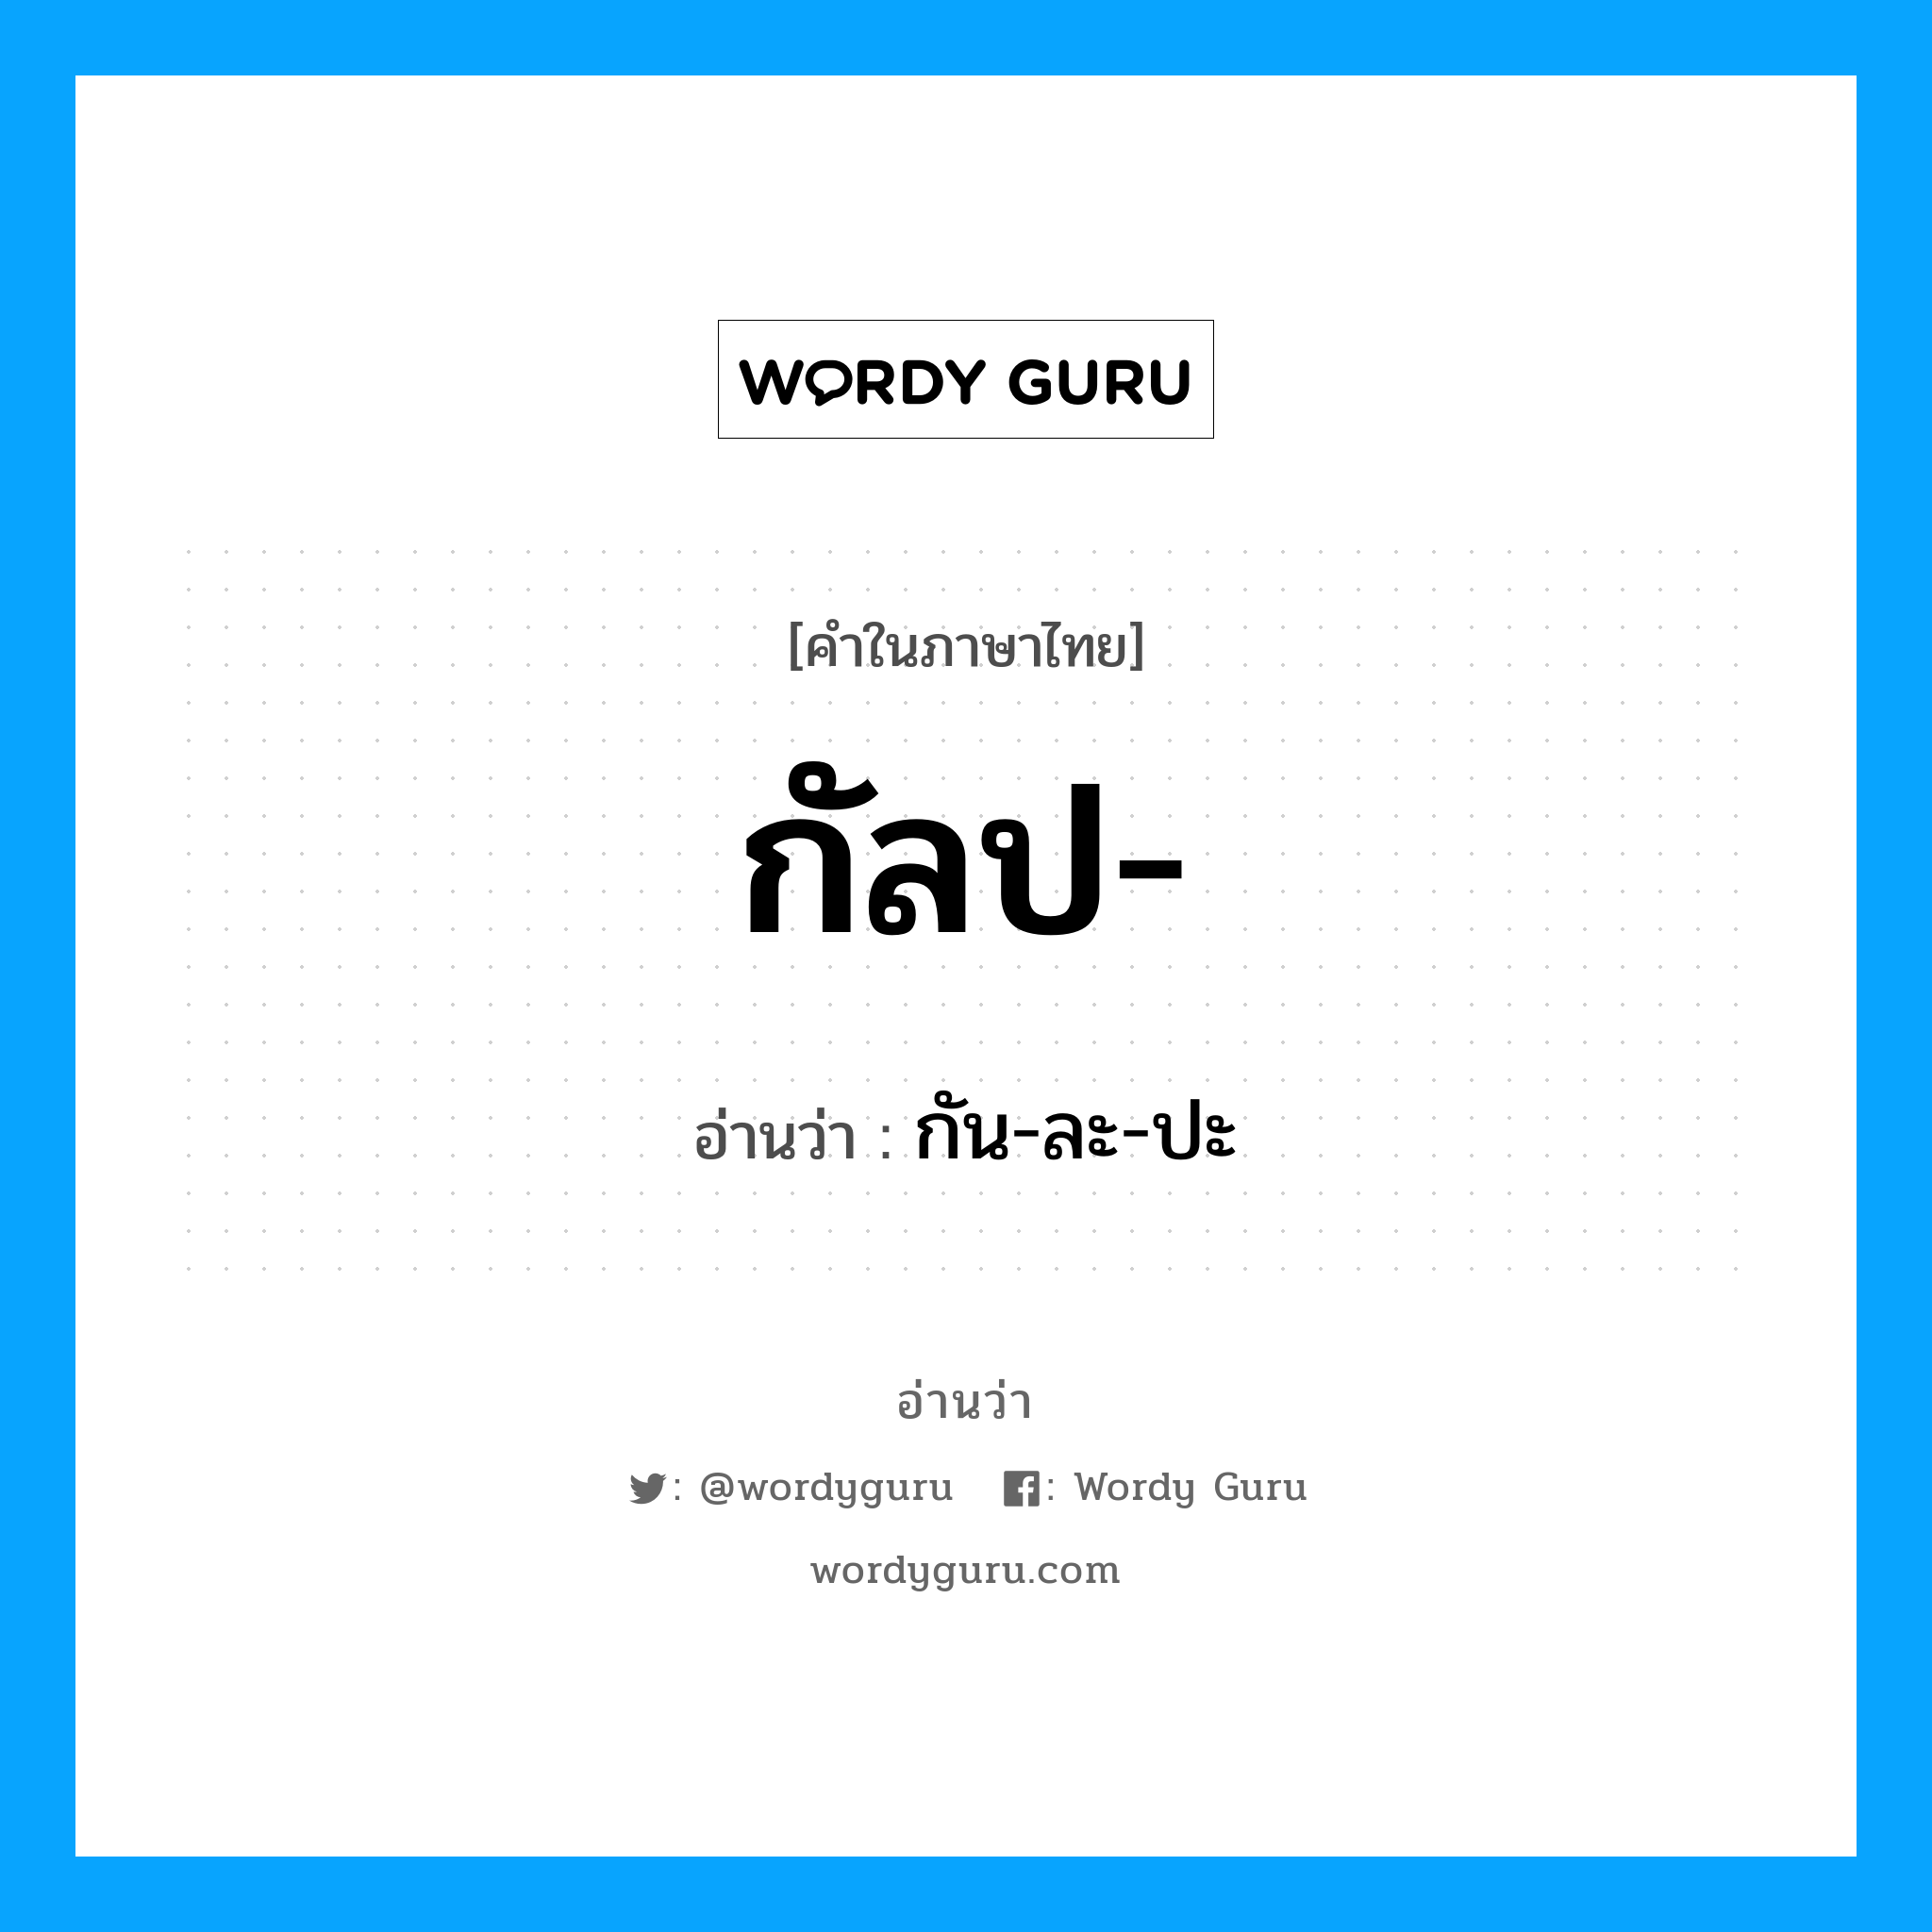 กัน-ละ-ปะ เป็นคำอ่านของคำไหน?, คำในภาษาไทย กัน-ละ-ปะ อ่านว่า กัลป-